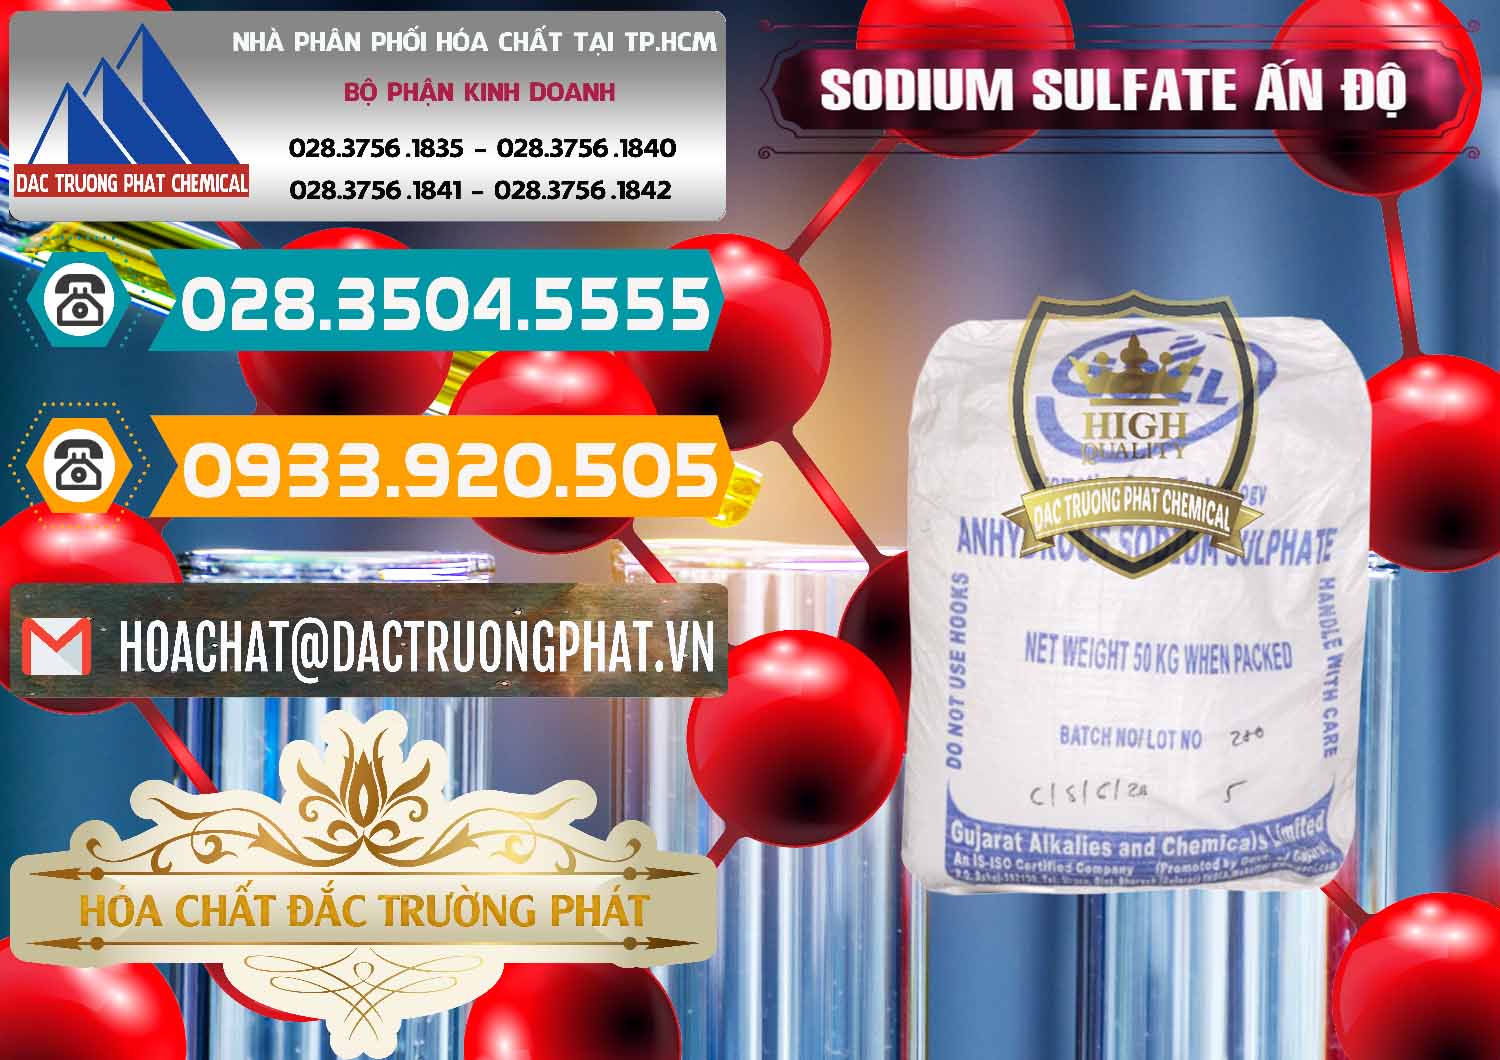 Cty chuyên kinh doanh - bán Sodium Sulphate - Muối Sunfat Na2SO4 GACL Ấn Độ India - 0461 - Cty cung cấp _ phân phối hóa chất tại TP.HCM - congtyhoachat.vn